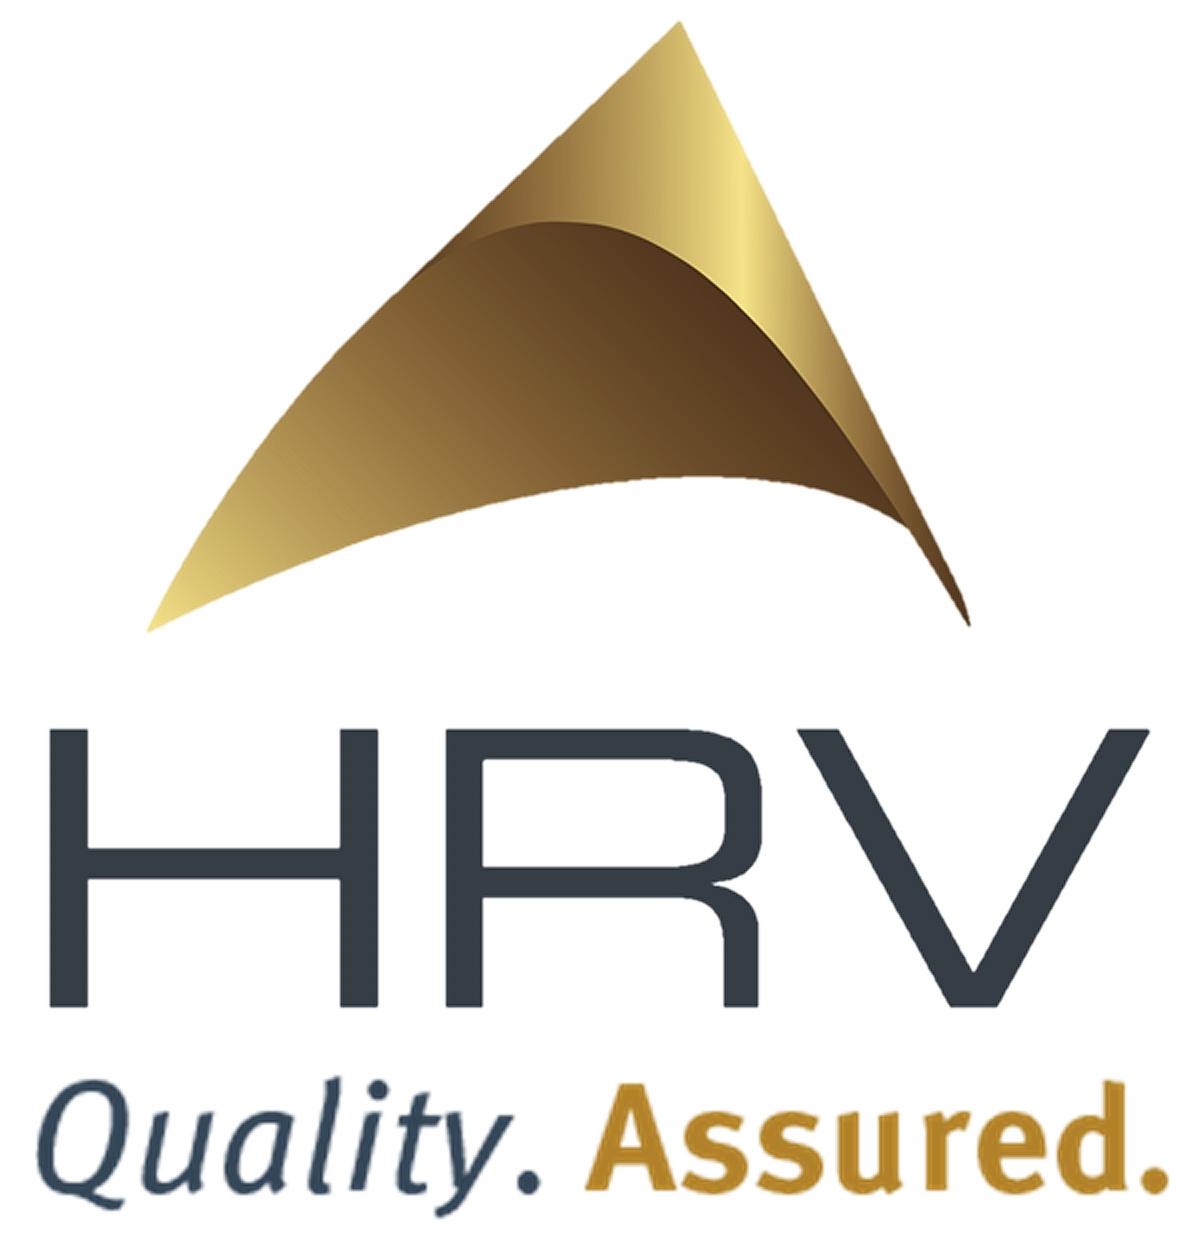 Hr-V Logo - HRV Conformance Verification Associates, Inc. - We are Quality Assured.